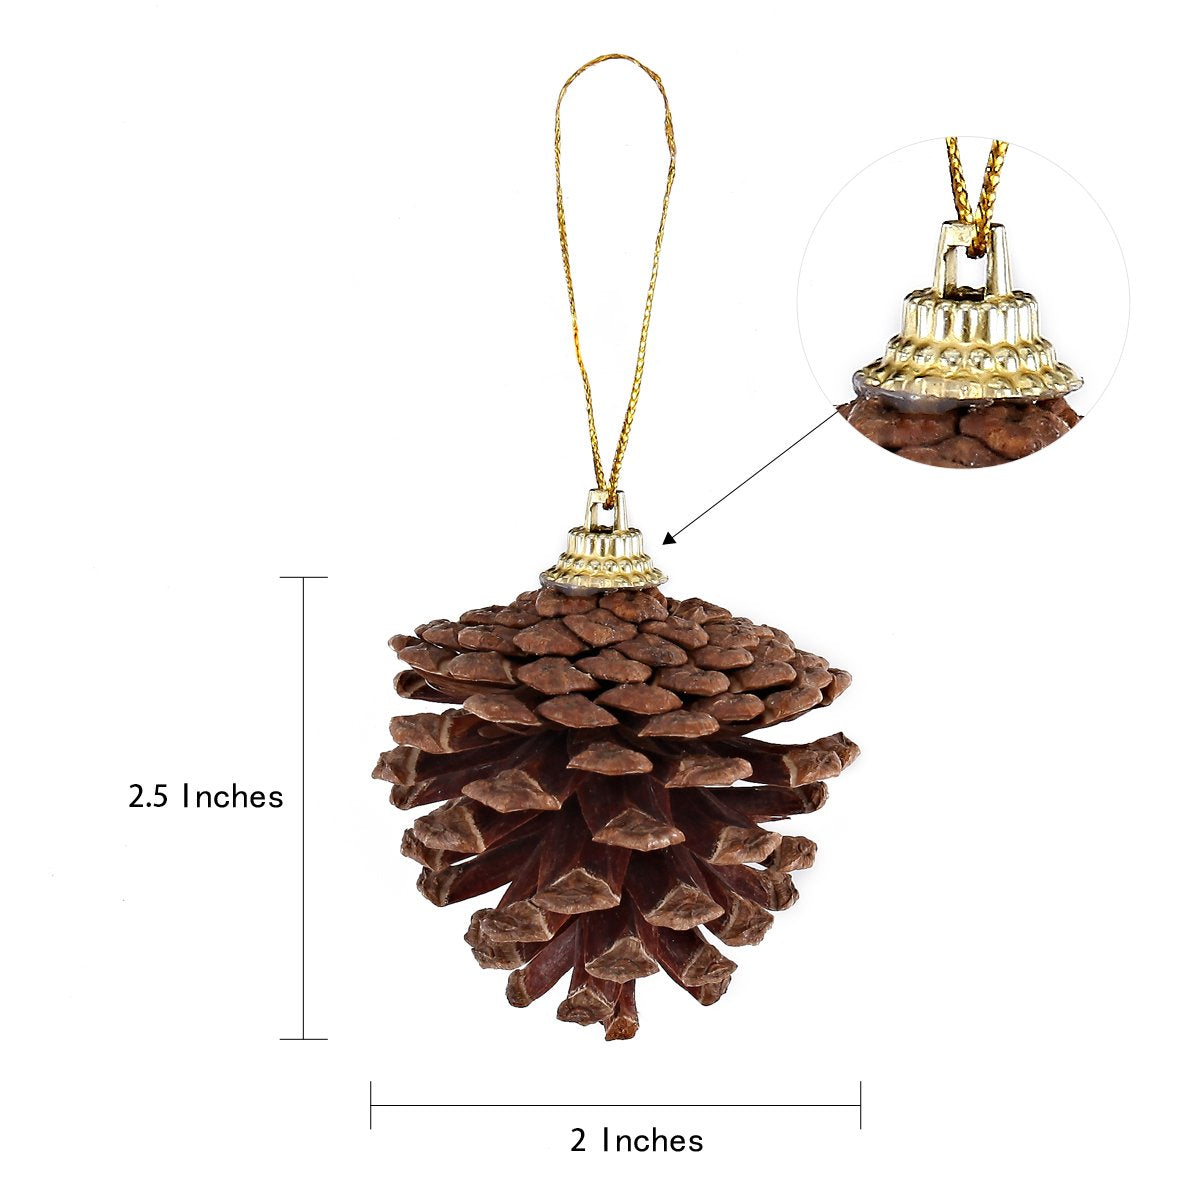 Pextian pextian 108 pcs artificial pine cone ornaments for crafts